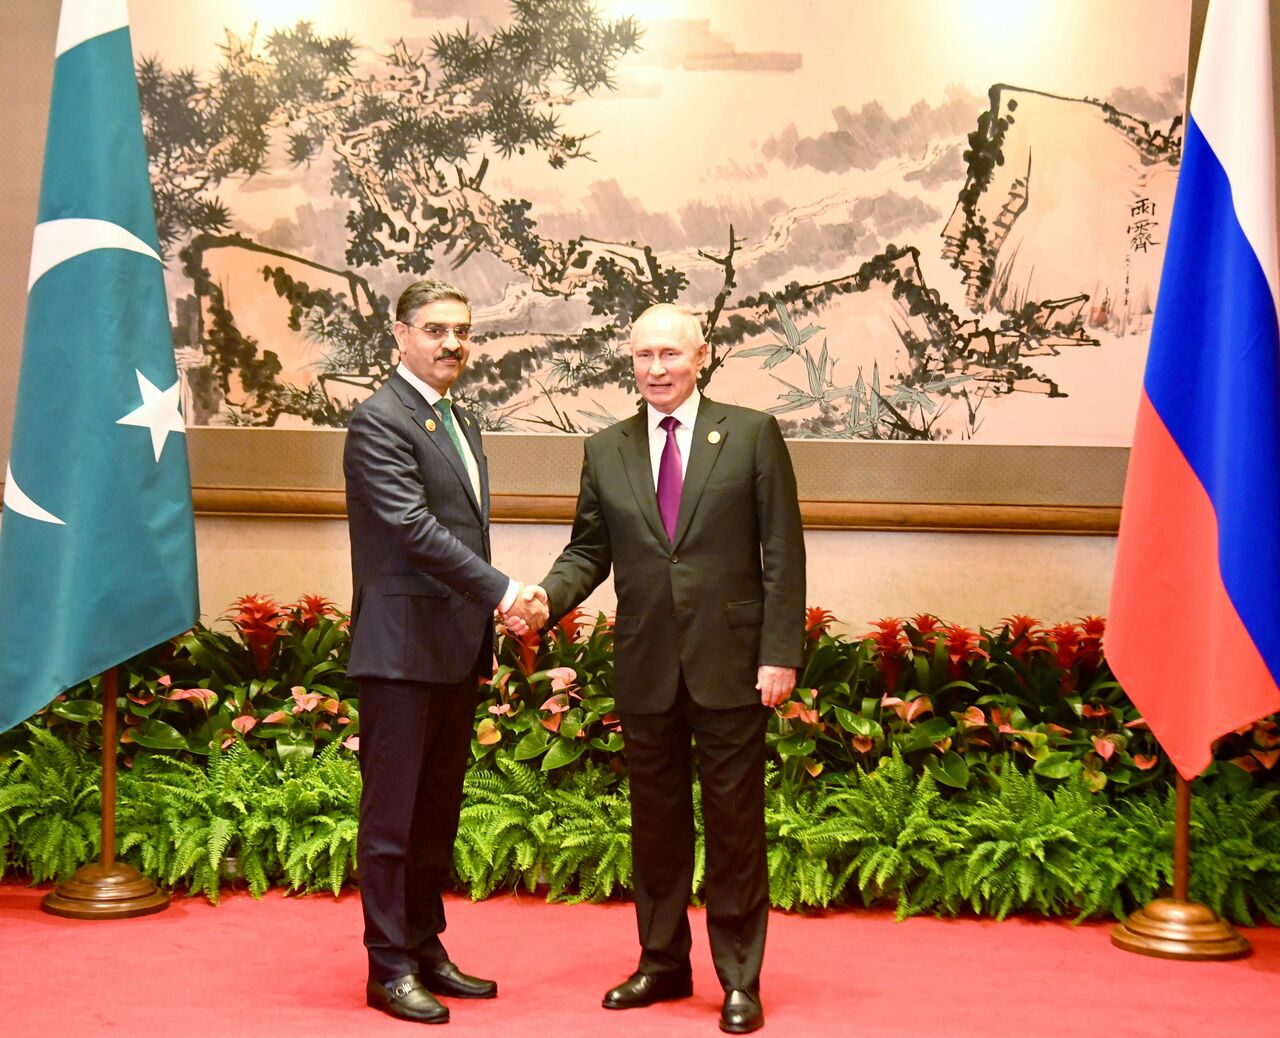 دیدار سران پاکستان و روسیه در چین/گفت‌وگو پیرامون روابط دوجانبه و اوضاع خاورمیانه